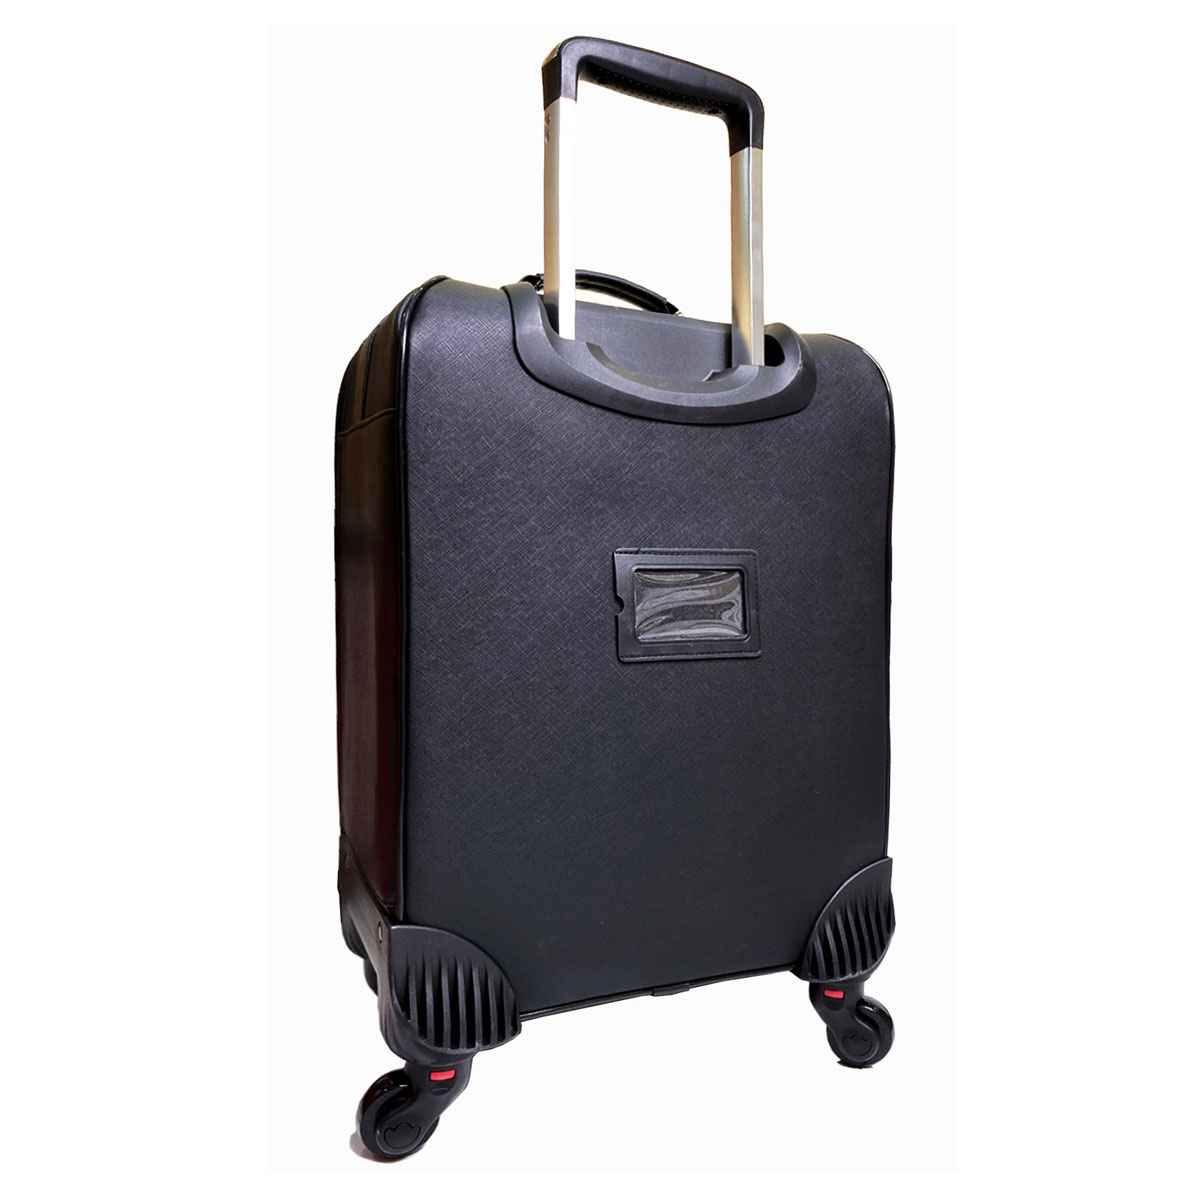 Cốp vali kéo đựng đồ trang điểm chuyên nghiệp da simili linhshop